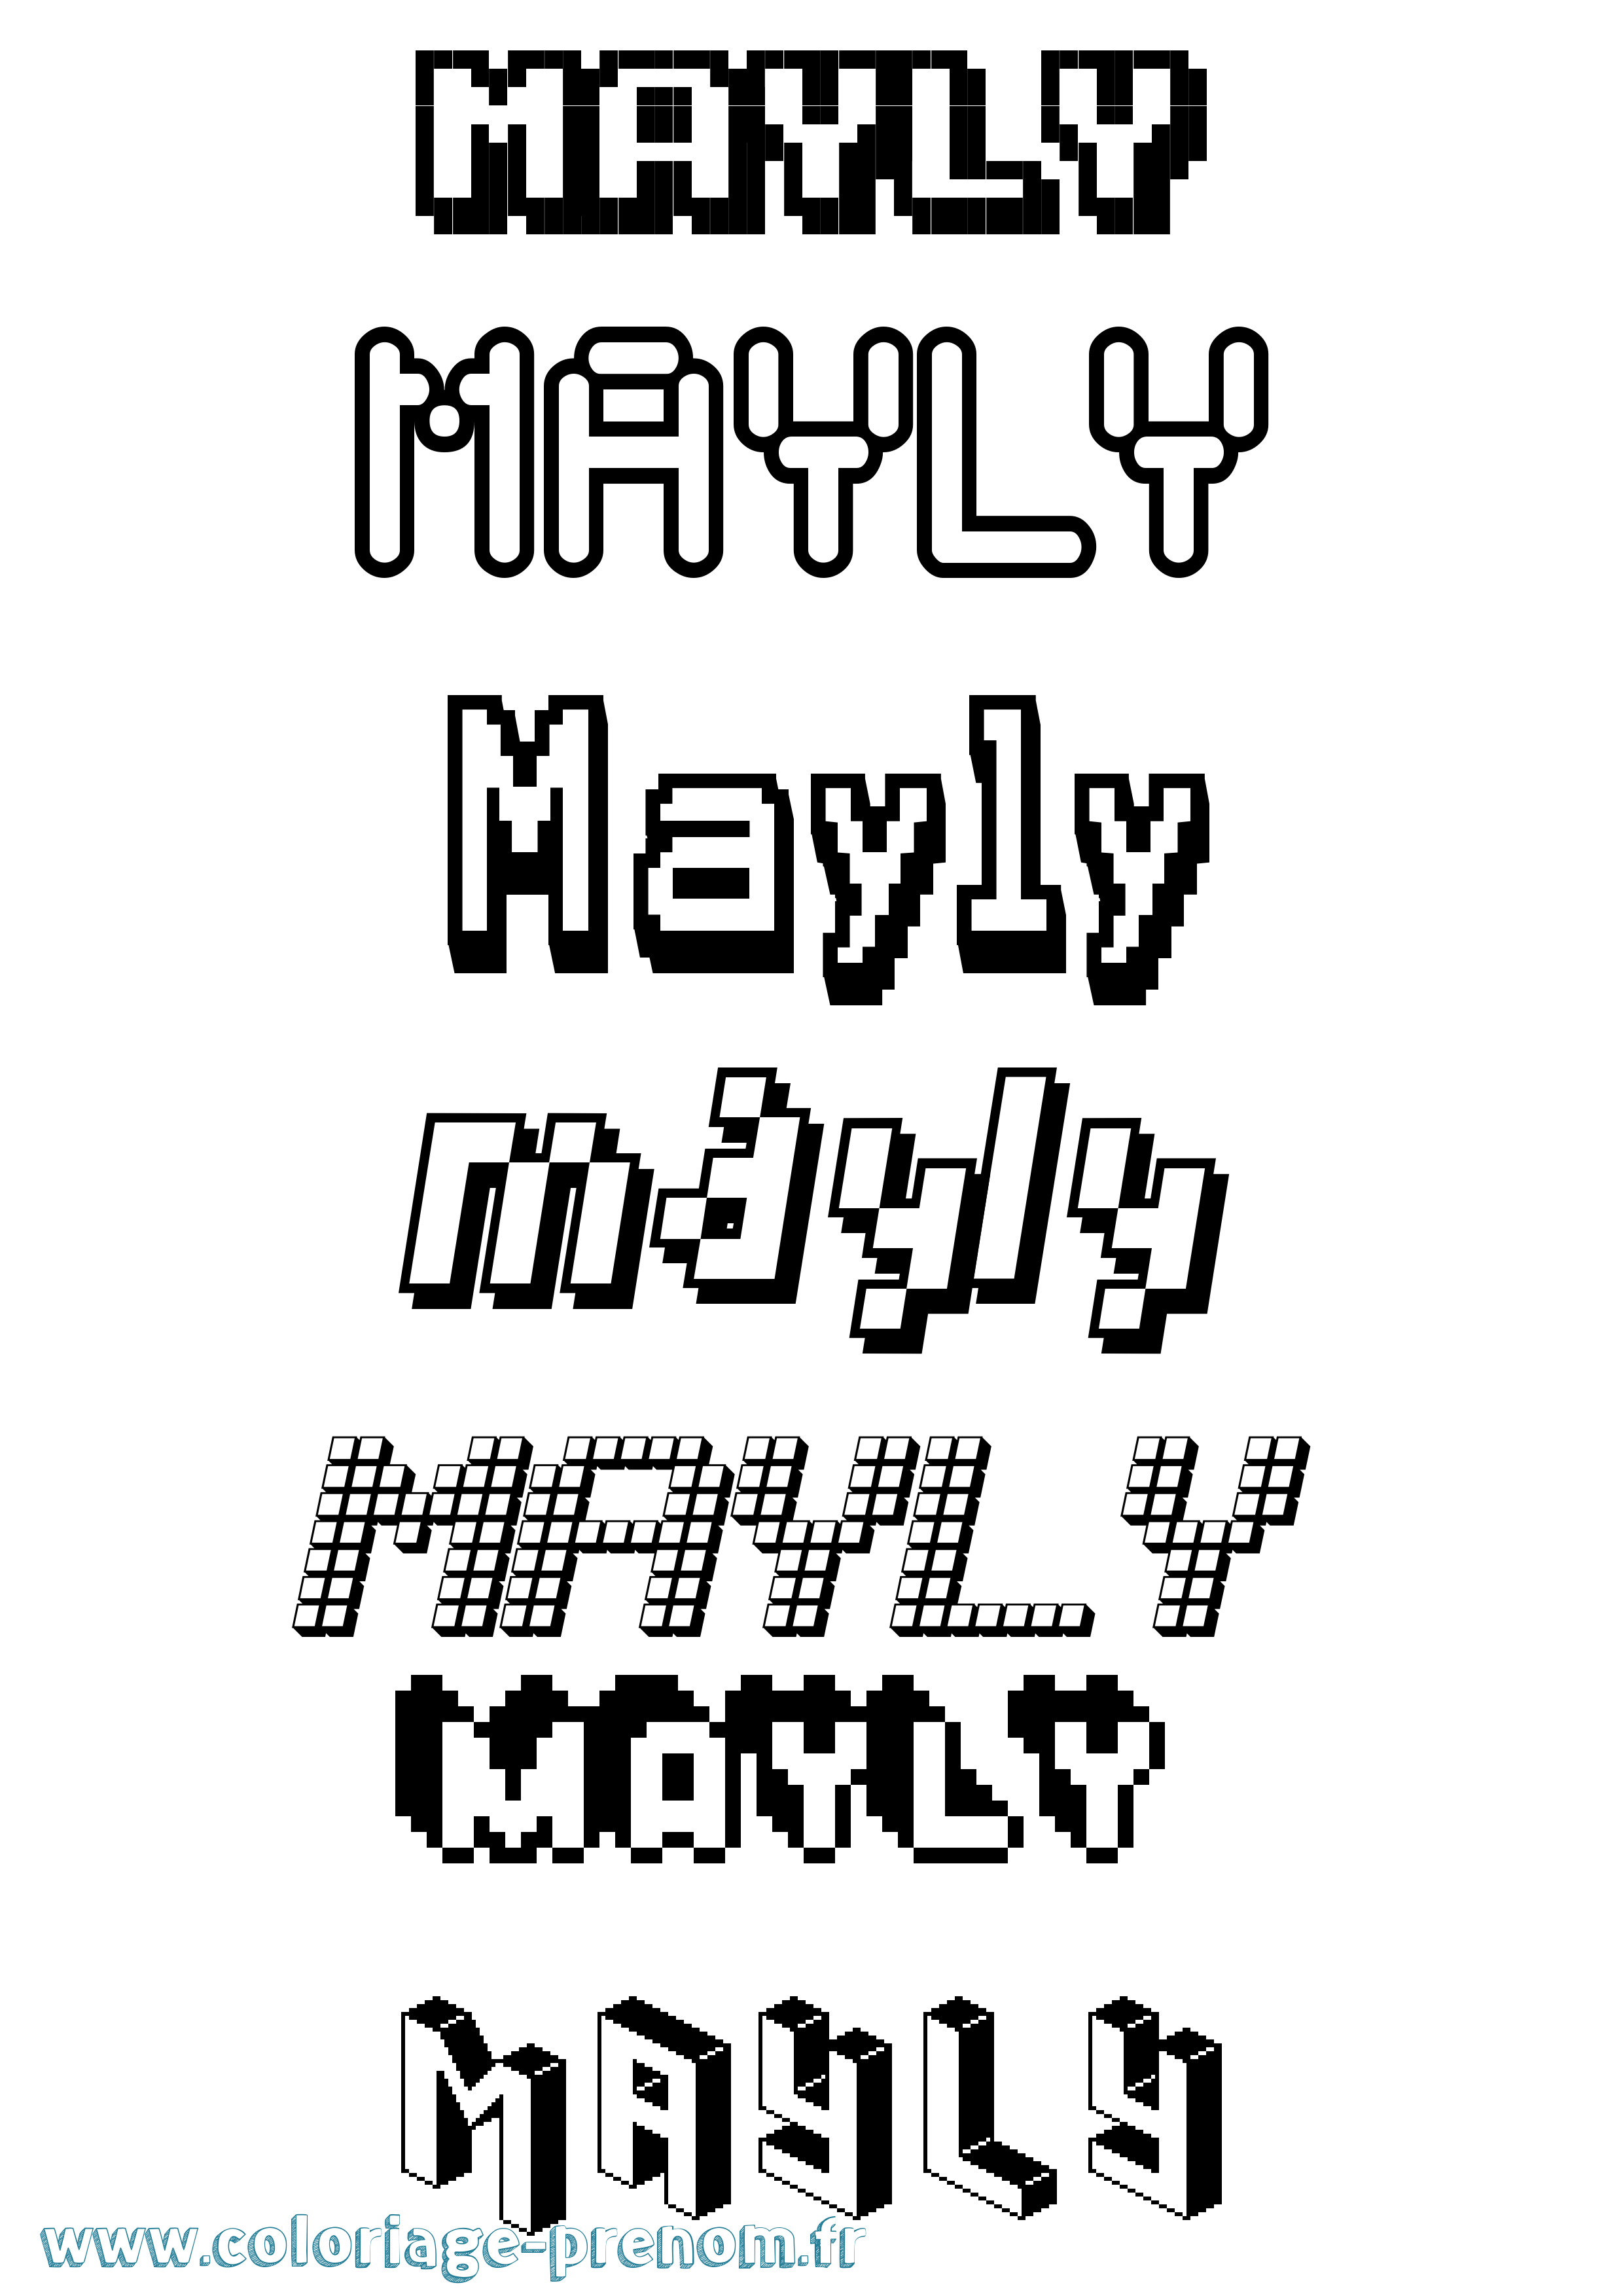 Coloriage prénom Mayly Pixel